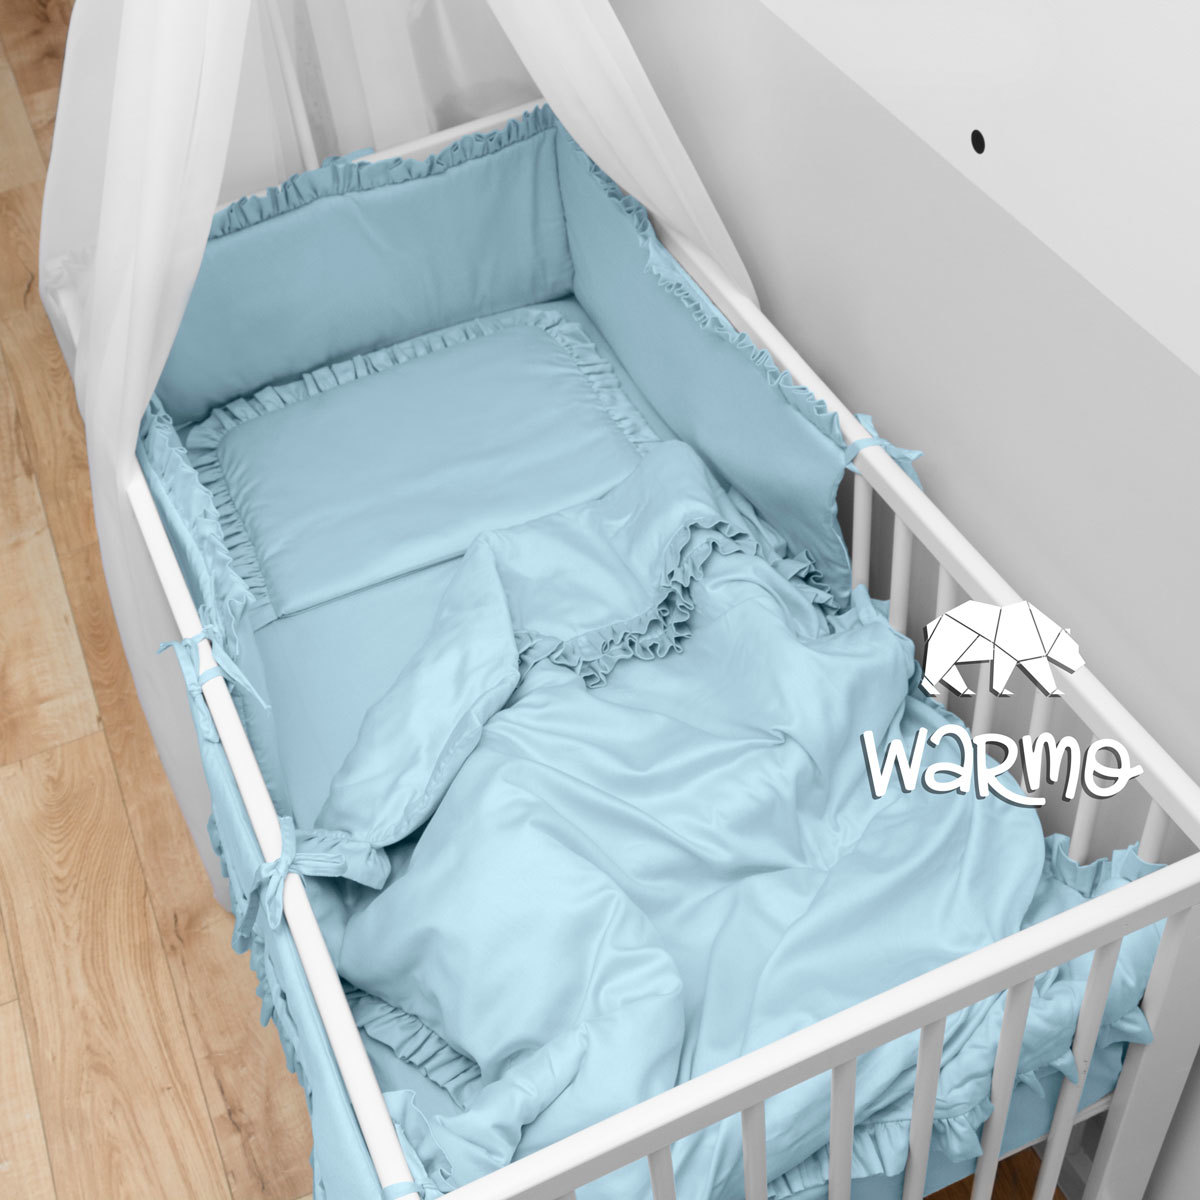 Комплект в дитяче ліжечко з 8 предметів з балдахіном Warmo™ ГОЛУБИЙ